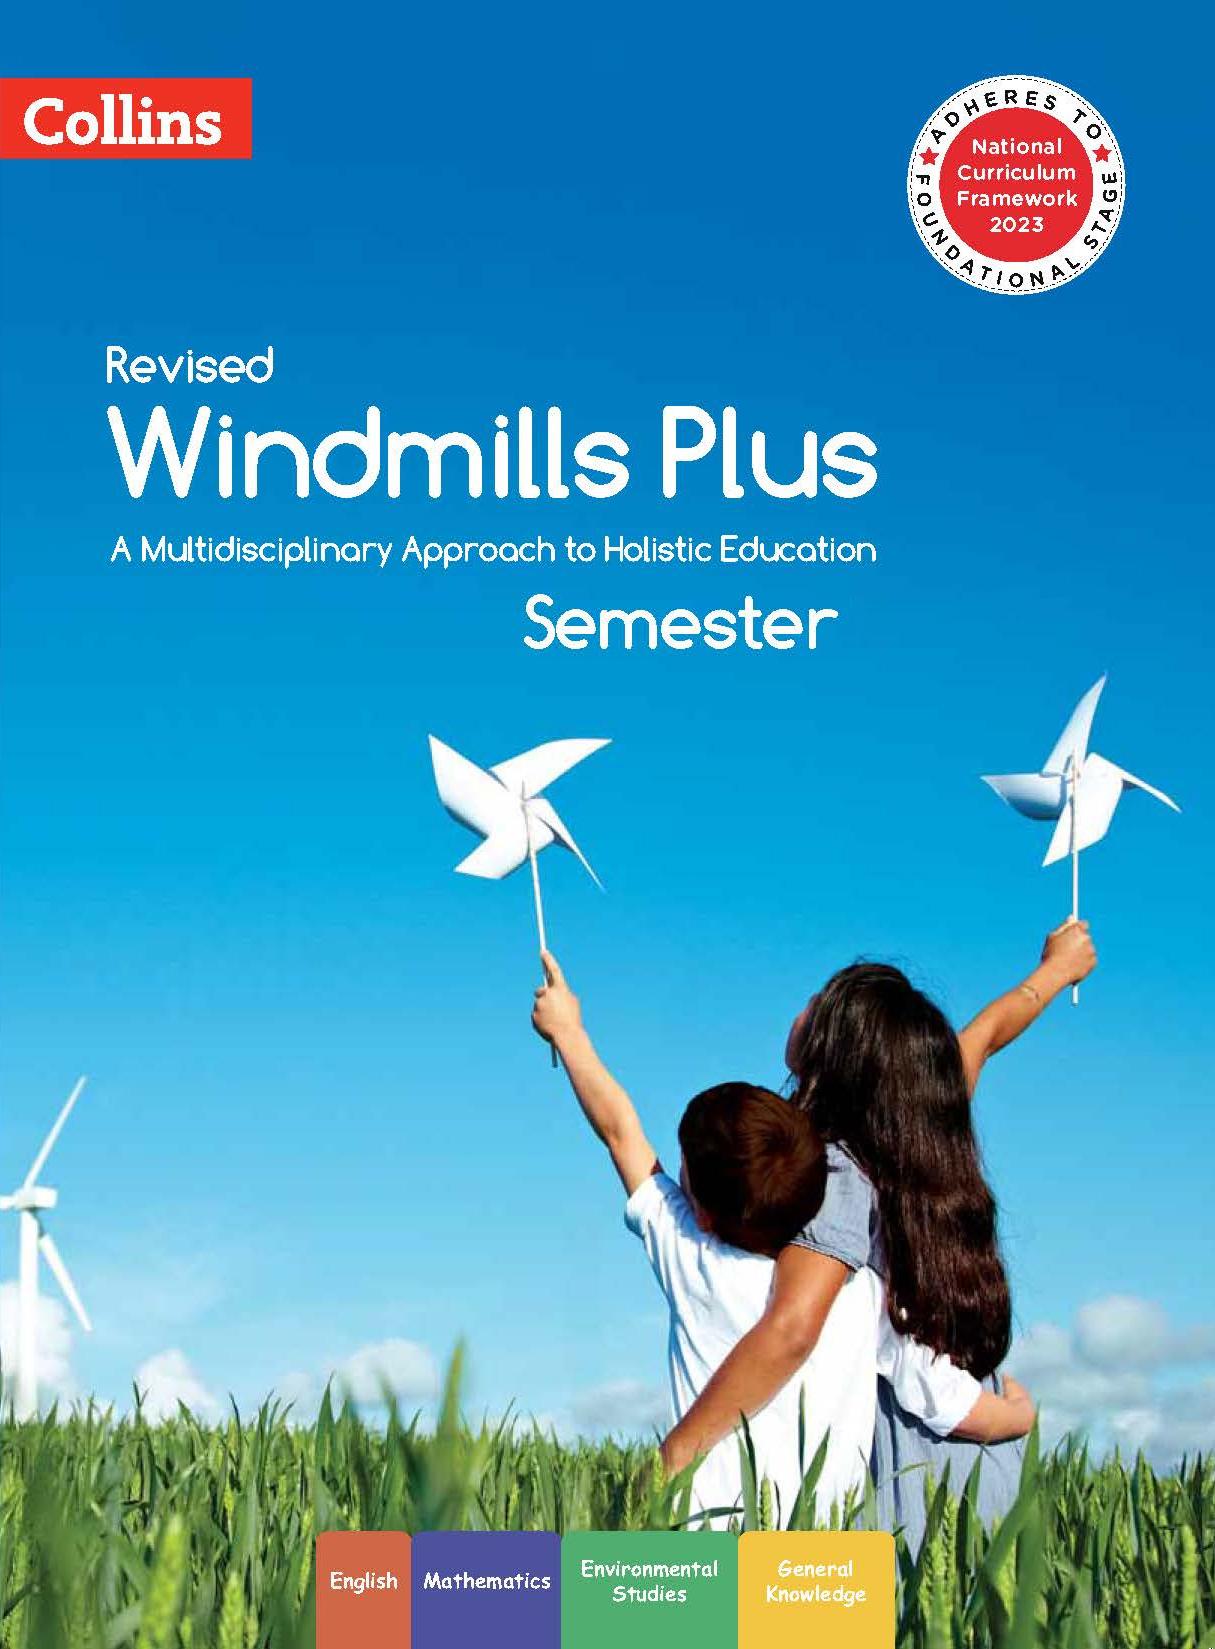 Revised Windmills Plus